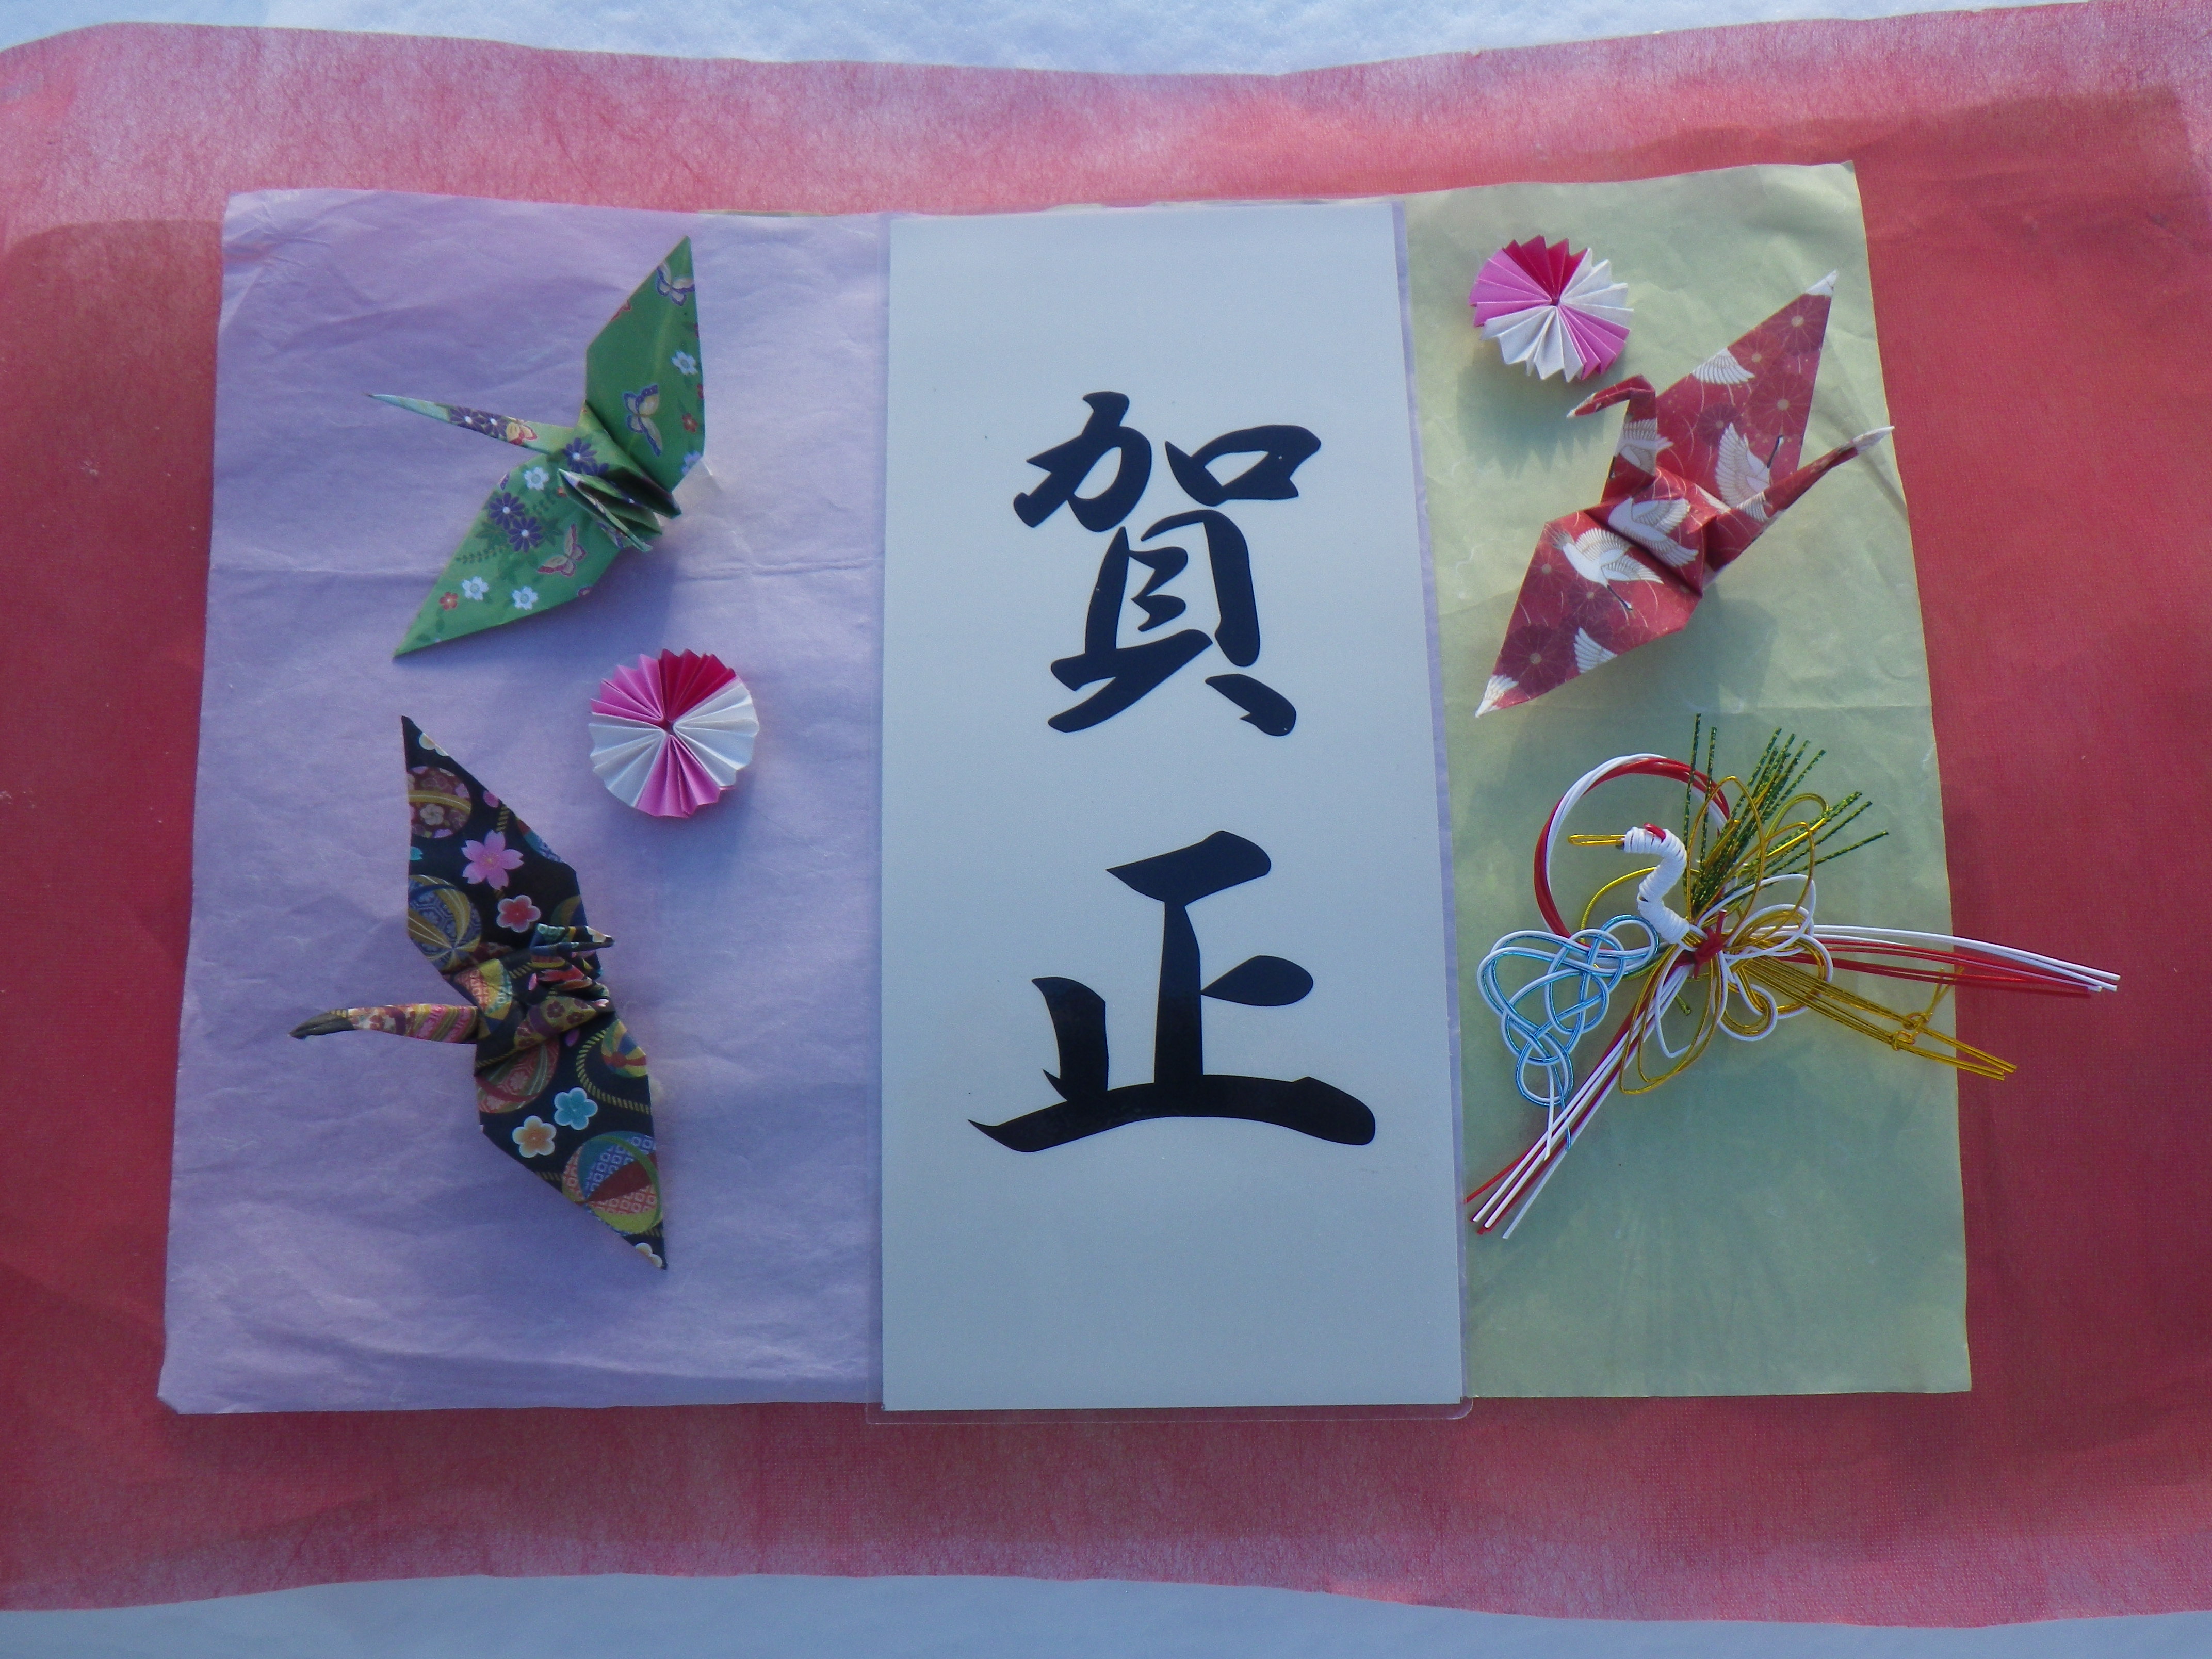 賀正の筆文字の周りを折り鶴や水引で飾っている画像